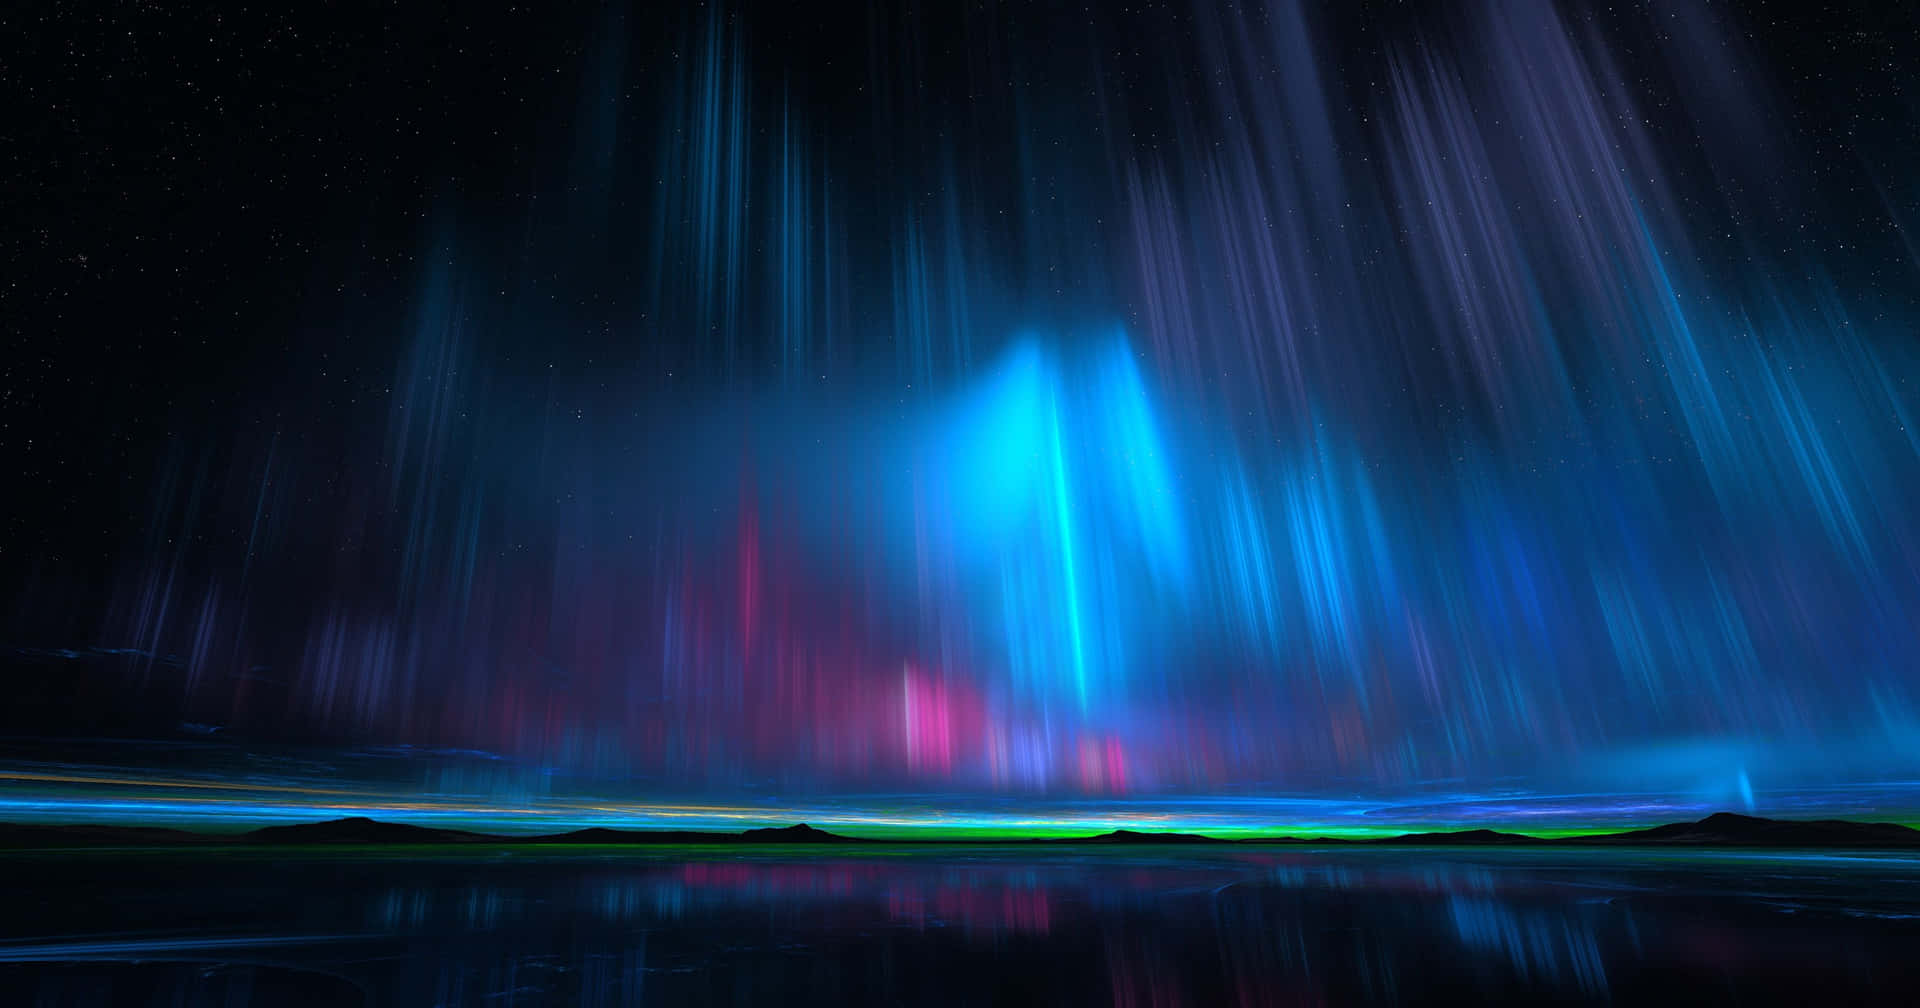 Acompáñamey Disfruta De La Impresionante Aurora Boreal En El Cielo Nocturno.